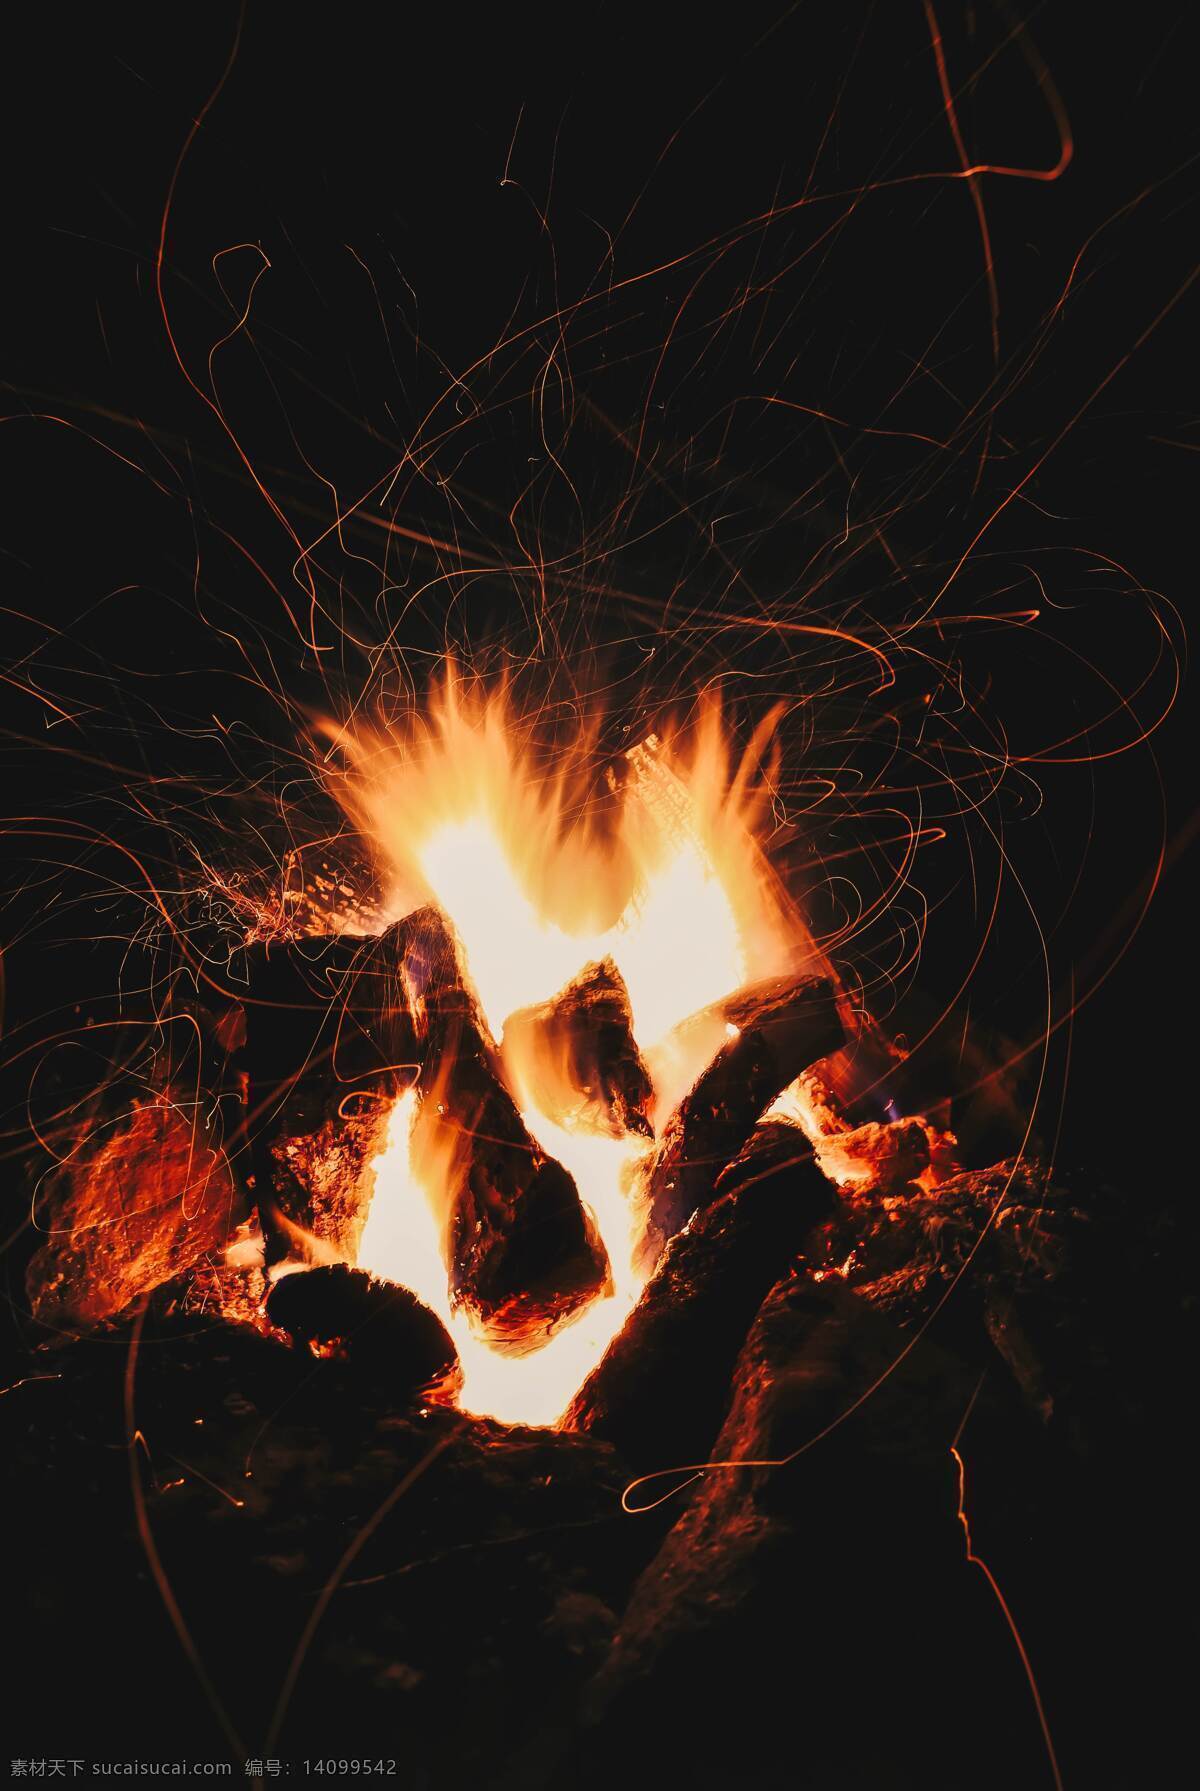 火堆 火 野外 野外生存 篝火 荒野 荒野求生 生活百科 生活素材